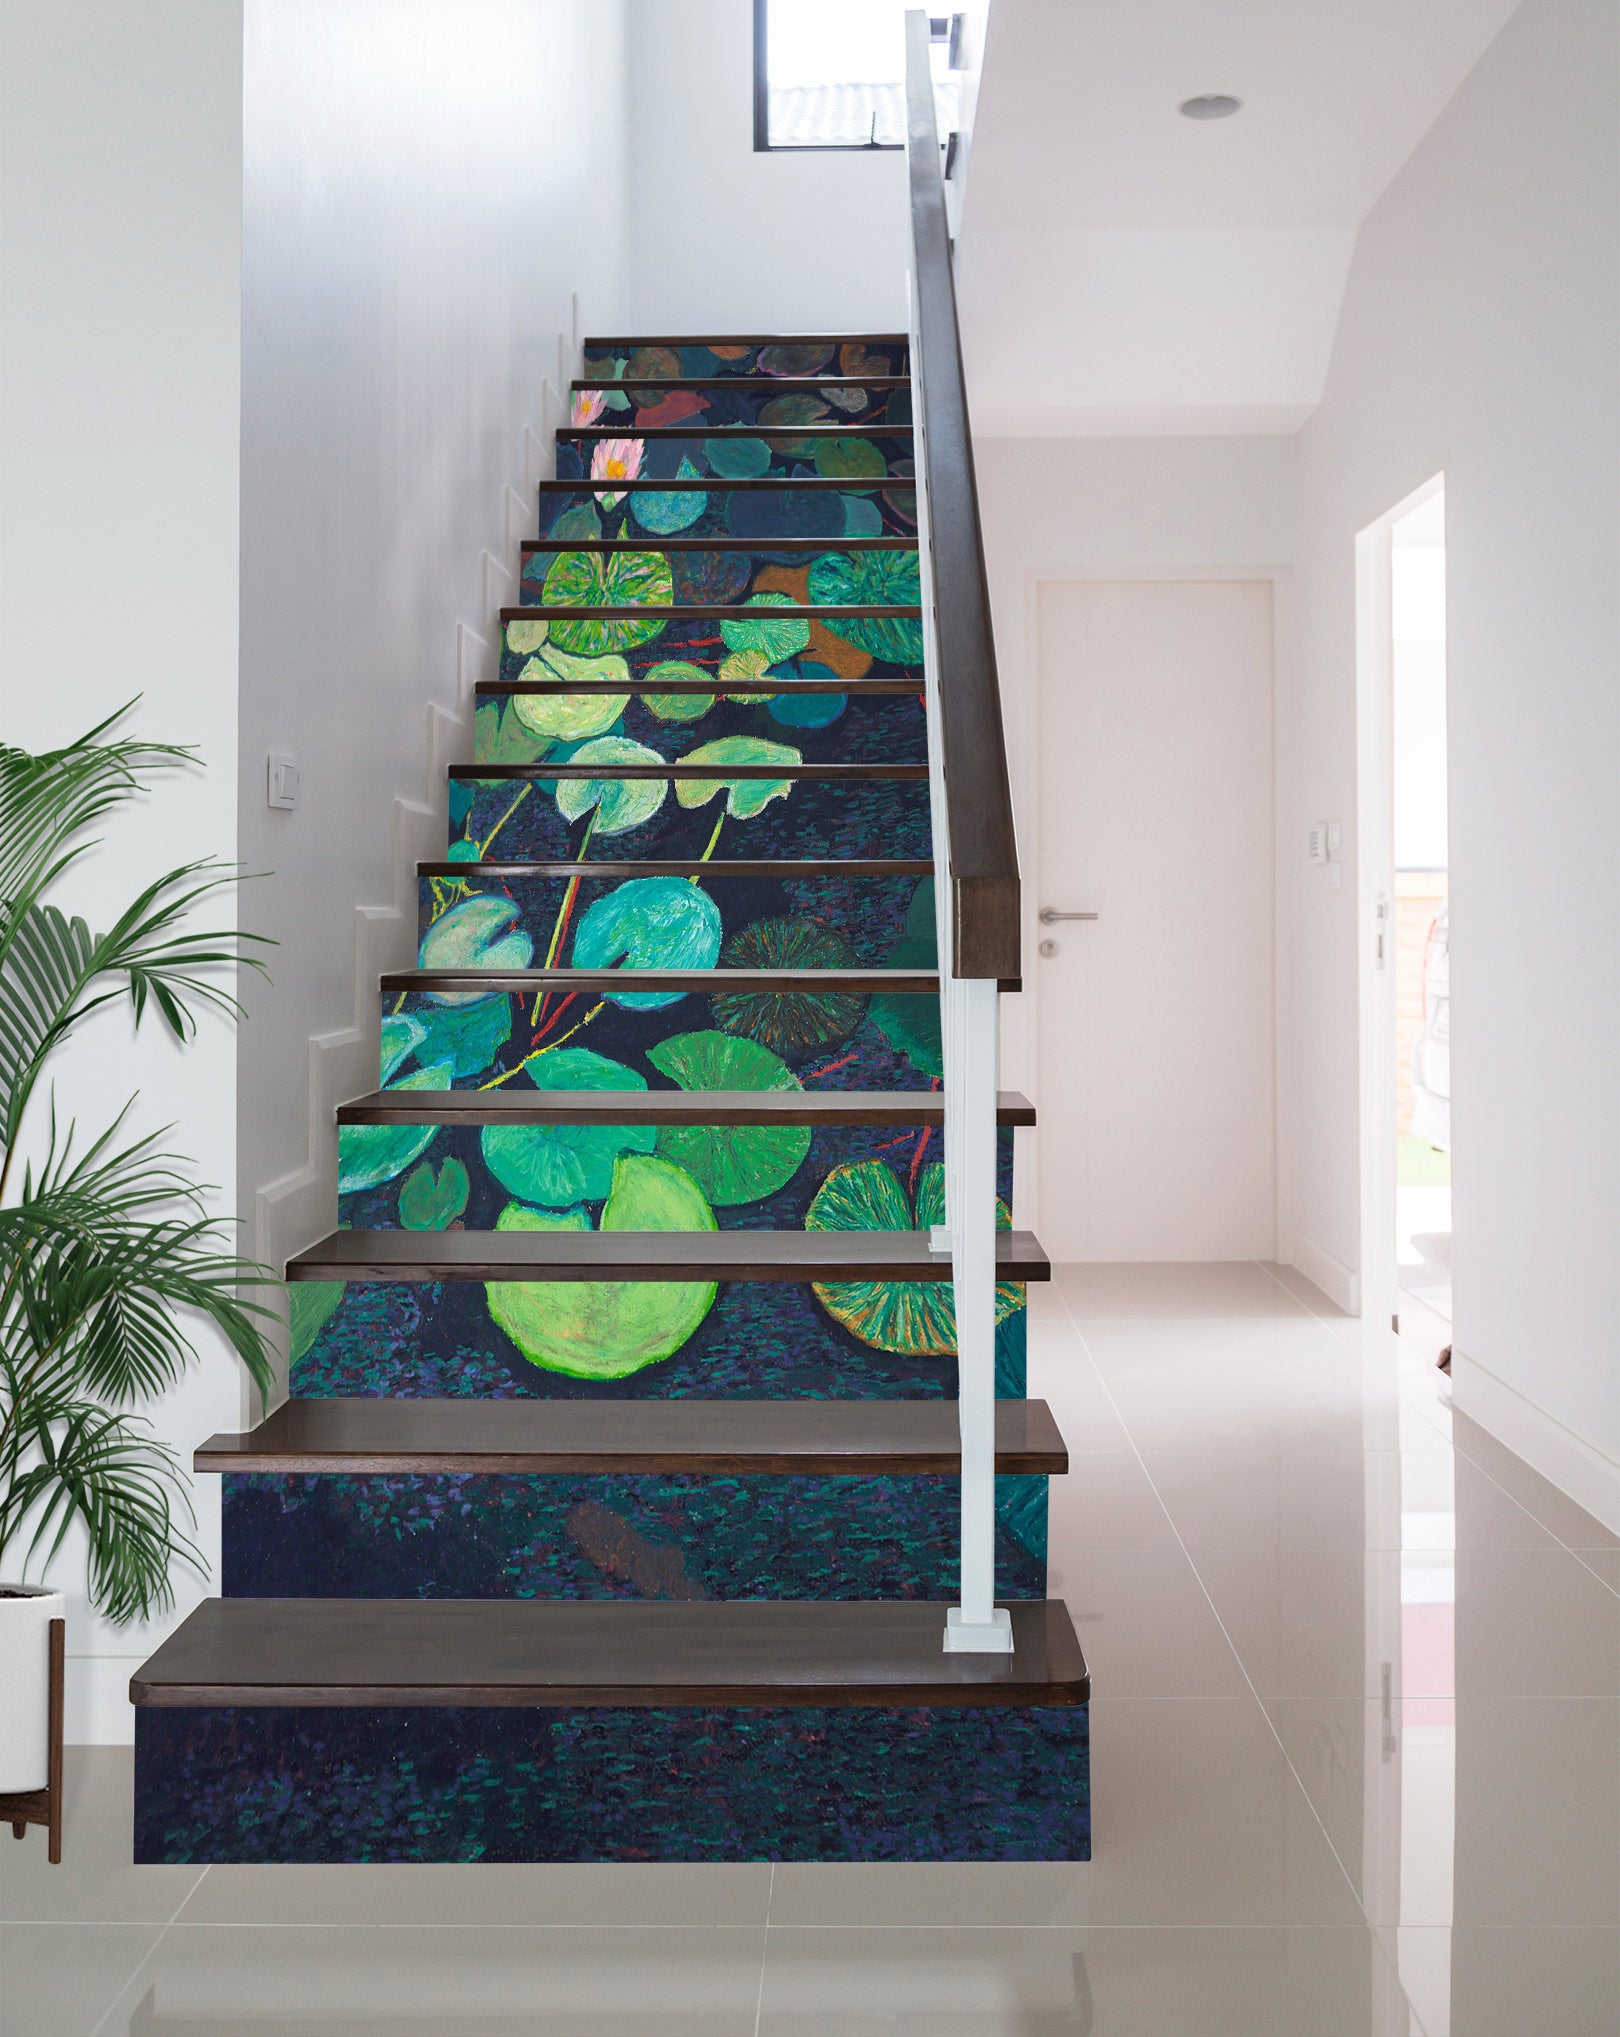 3D Green Lotus Leaf Painting 9062 Allan P. Friedlander Stair Risers